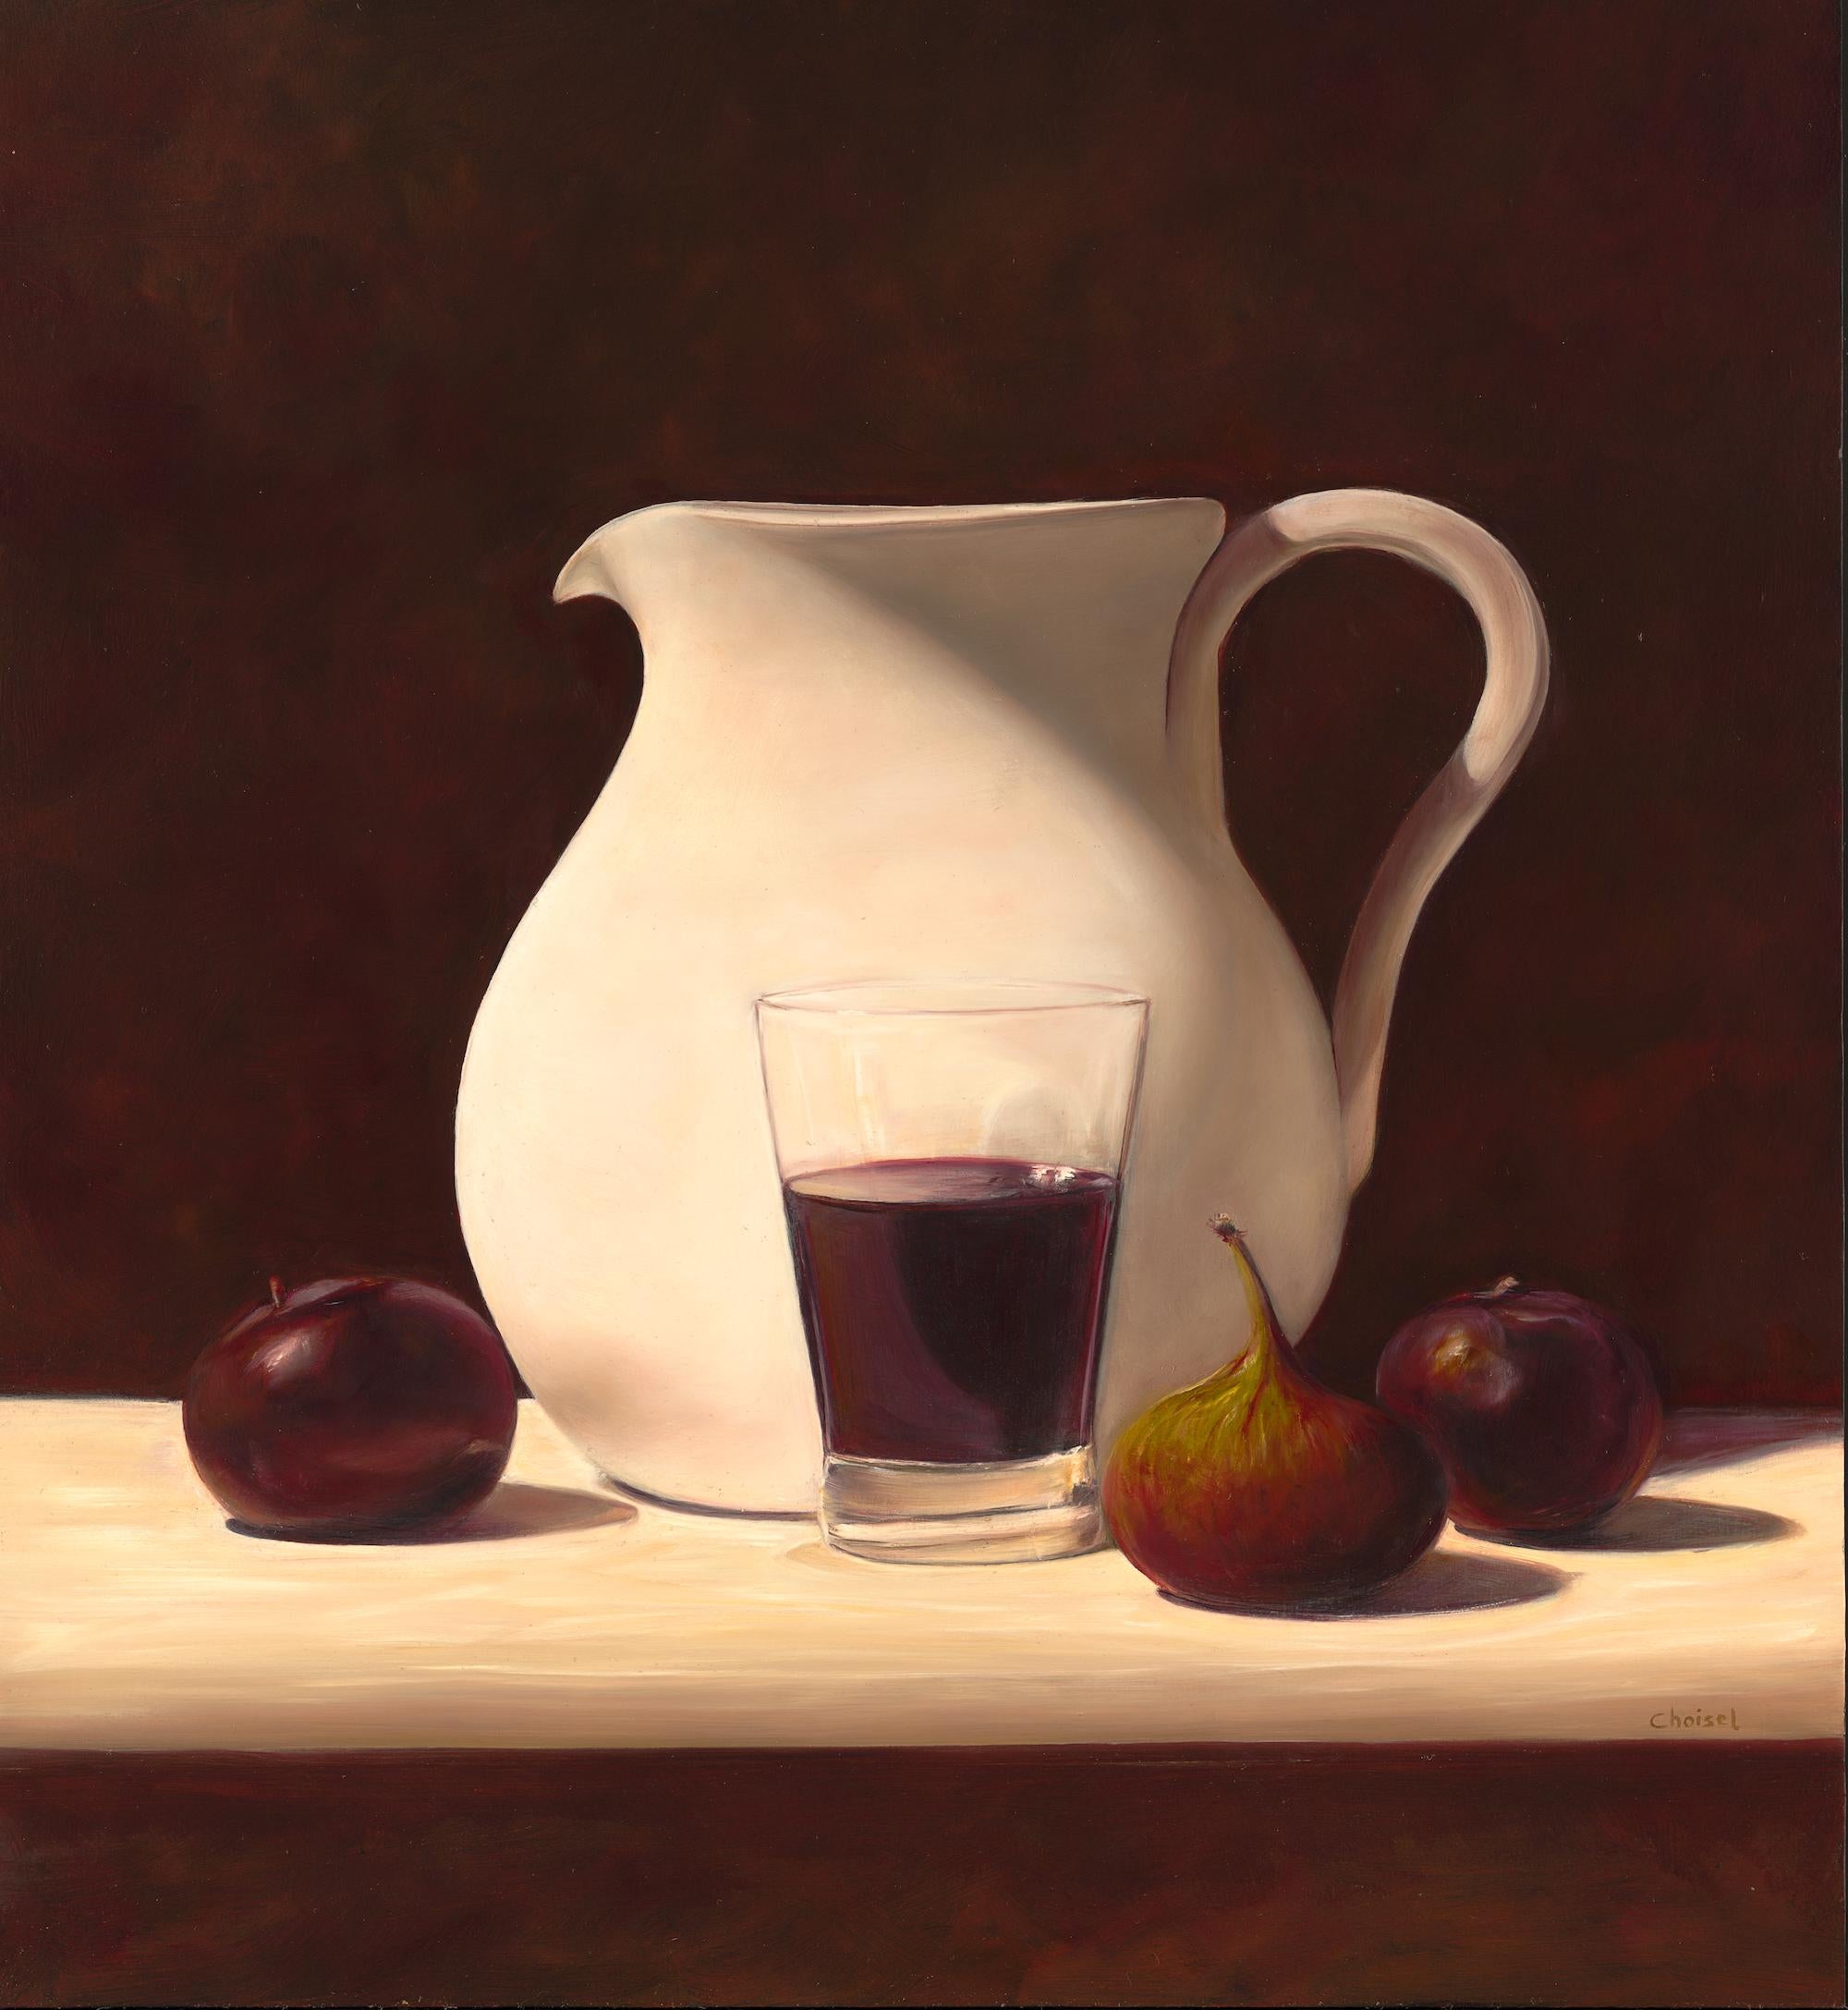 Frédéric Choisel Portrait Painting - Pitcher, Plums and Wine